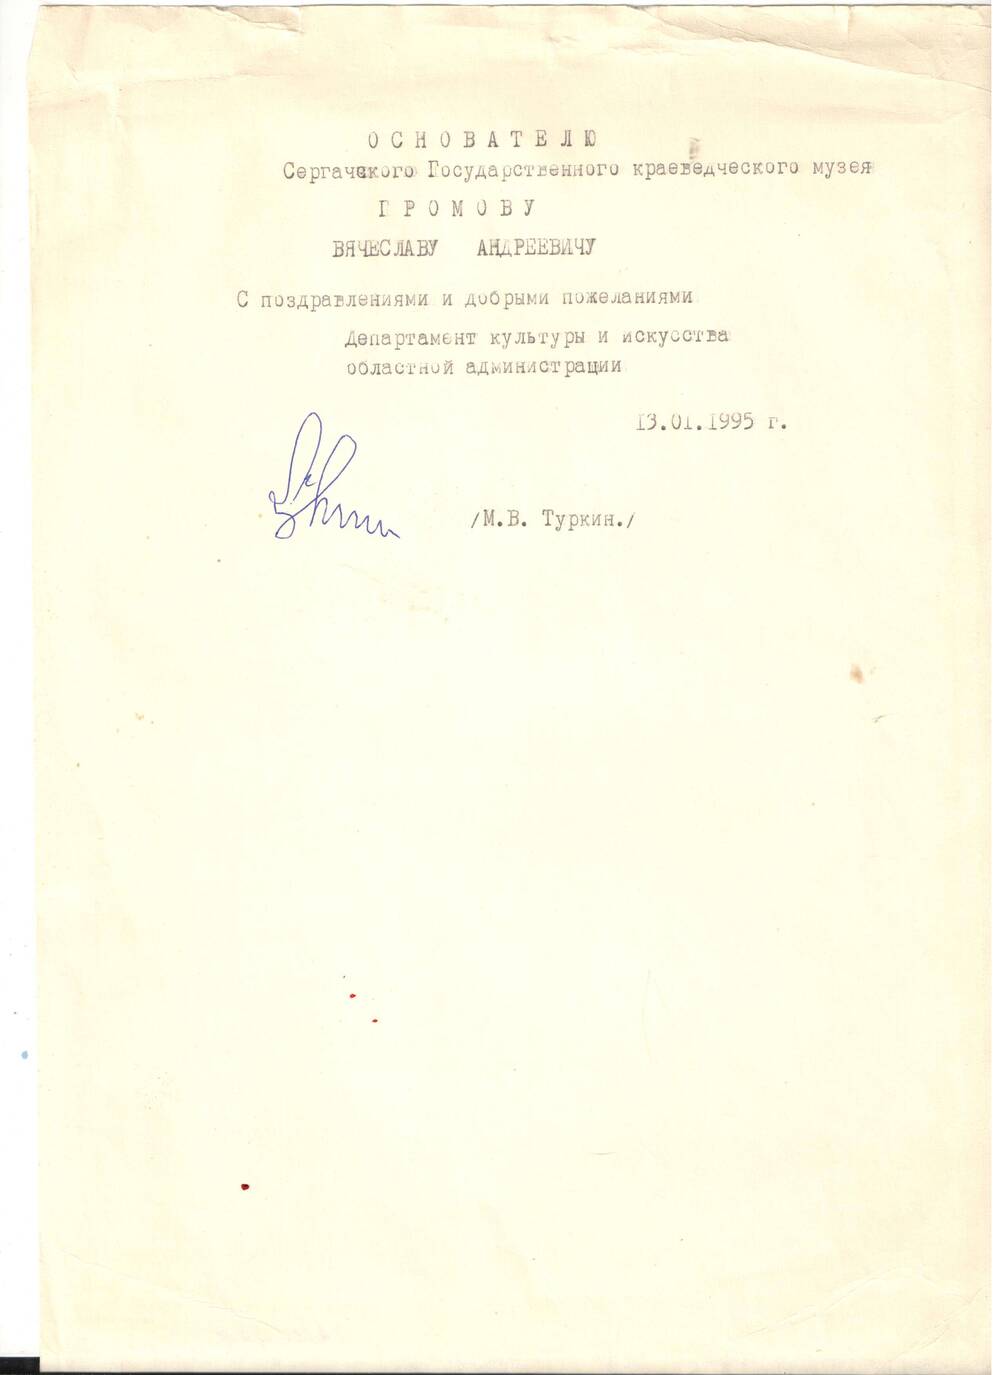 Письмо Громова В.А. с поздравлениями от Туркина М.В. 1995 г